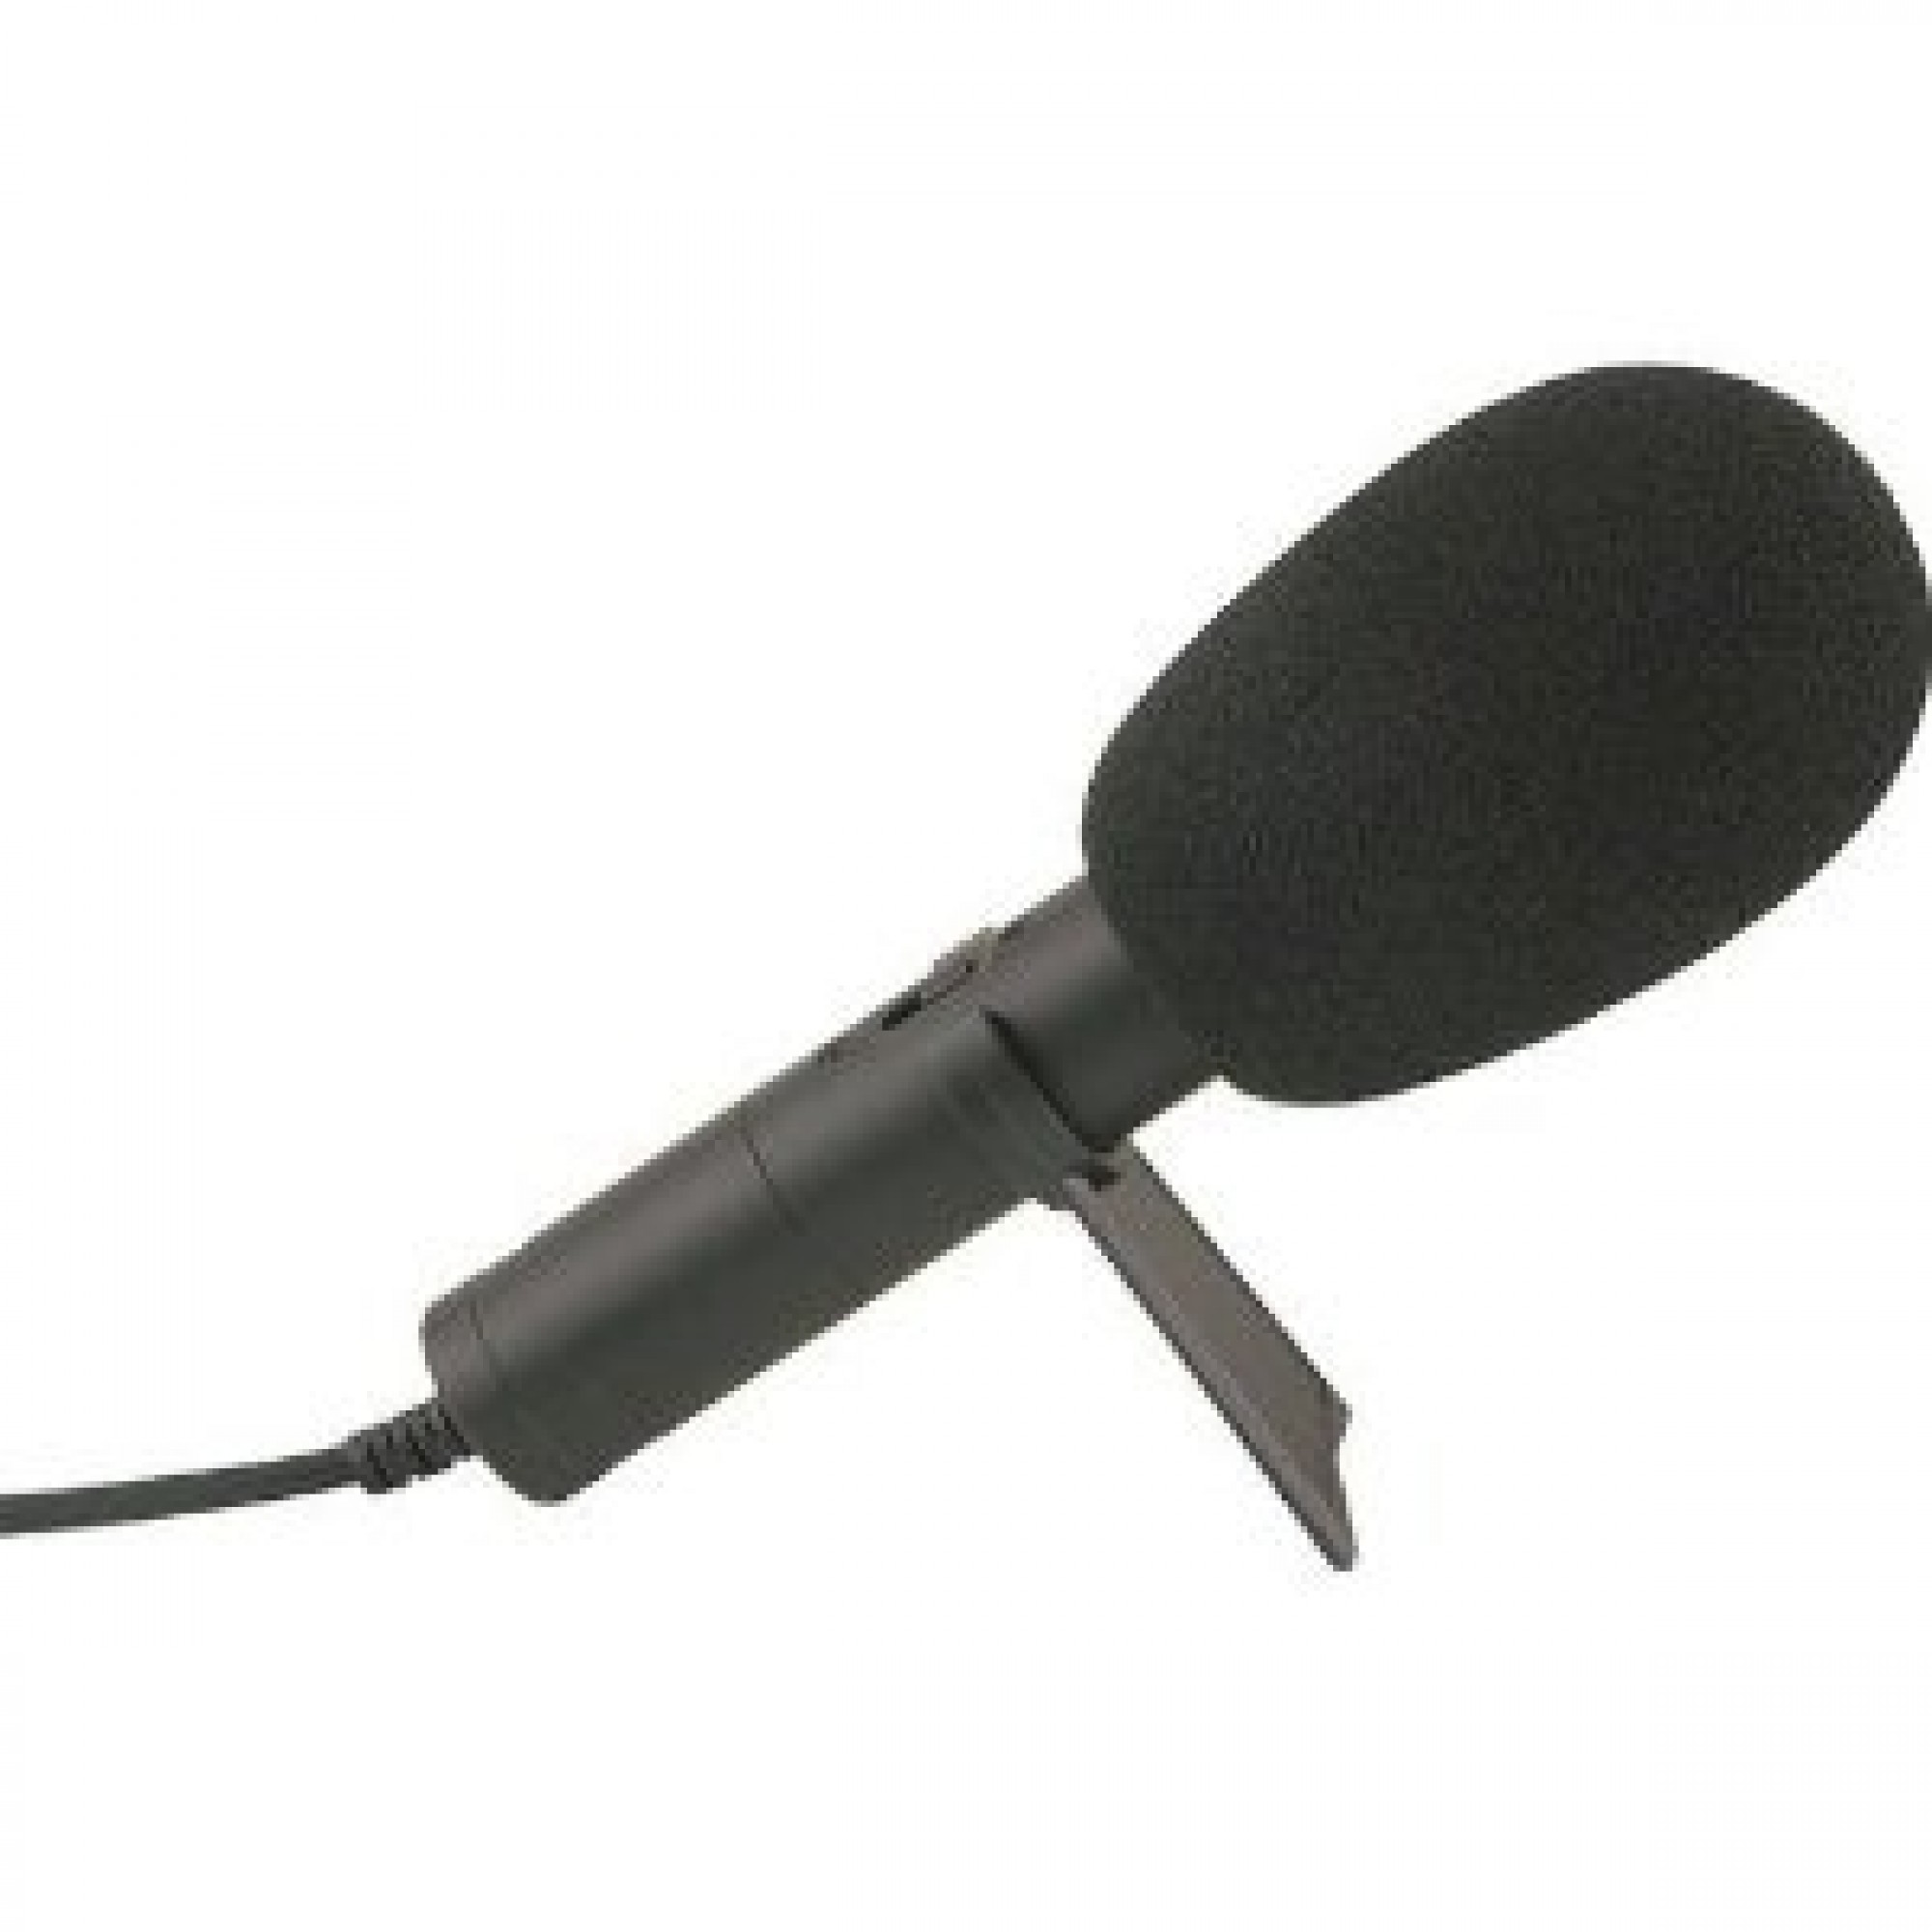 Захват микрофона. Микрофон Audio-Technica pro41. Микрофон проводной Sven MK-500 1.8М черный. Микрофон r35. Микрофон для Sublow Shure.